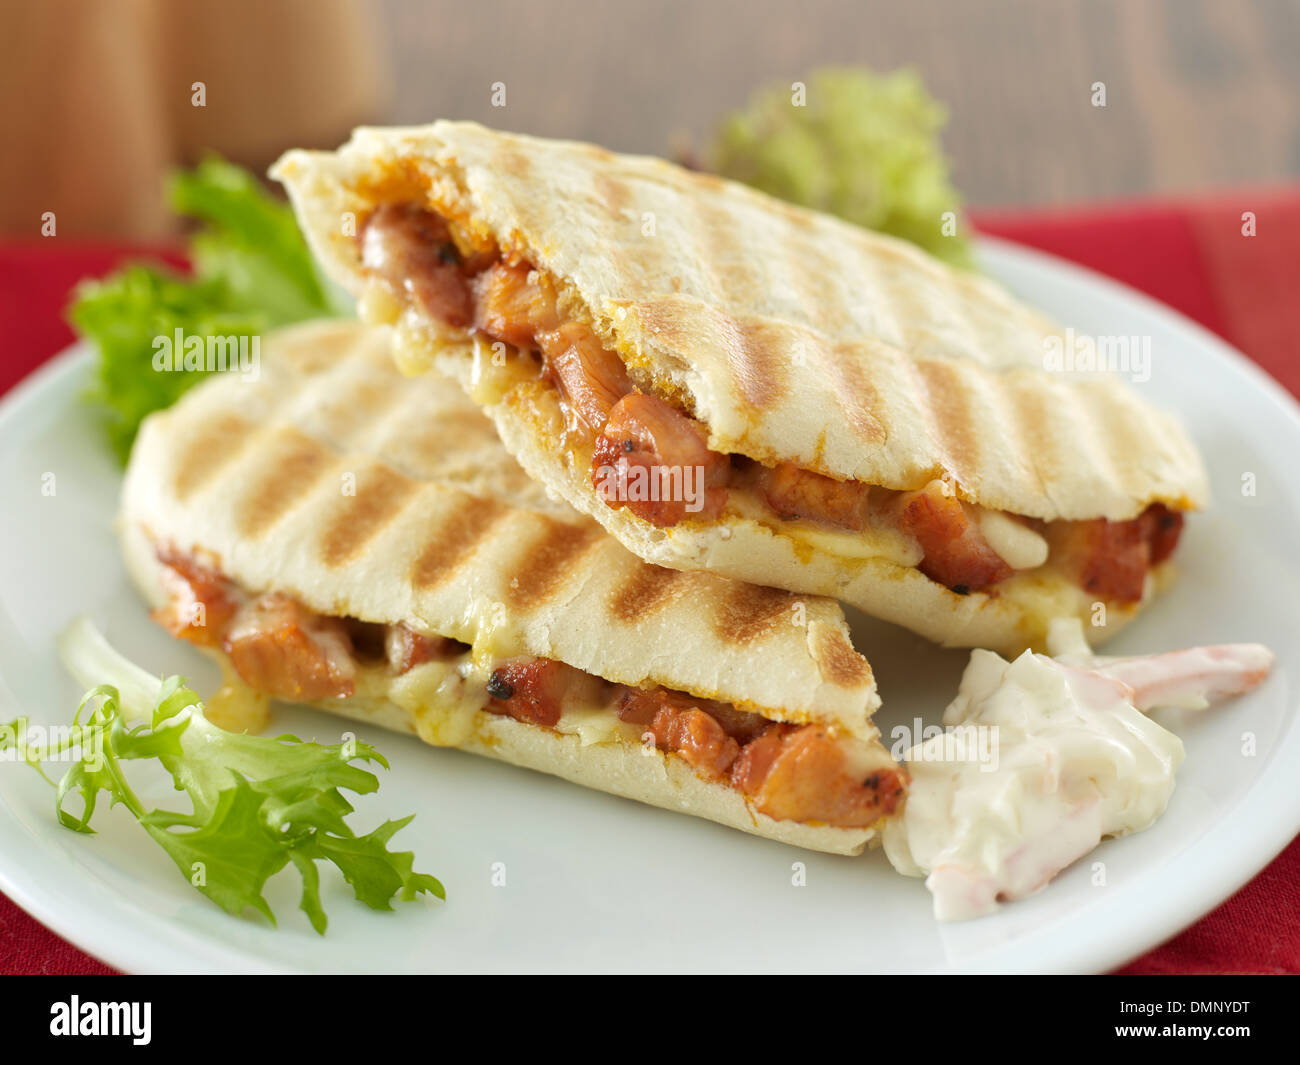 Comida pollo frito y queso panini y sándwich coleslaw Foto de stock